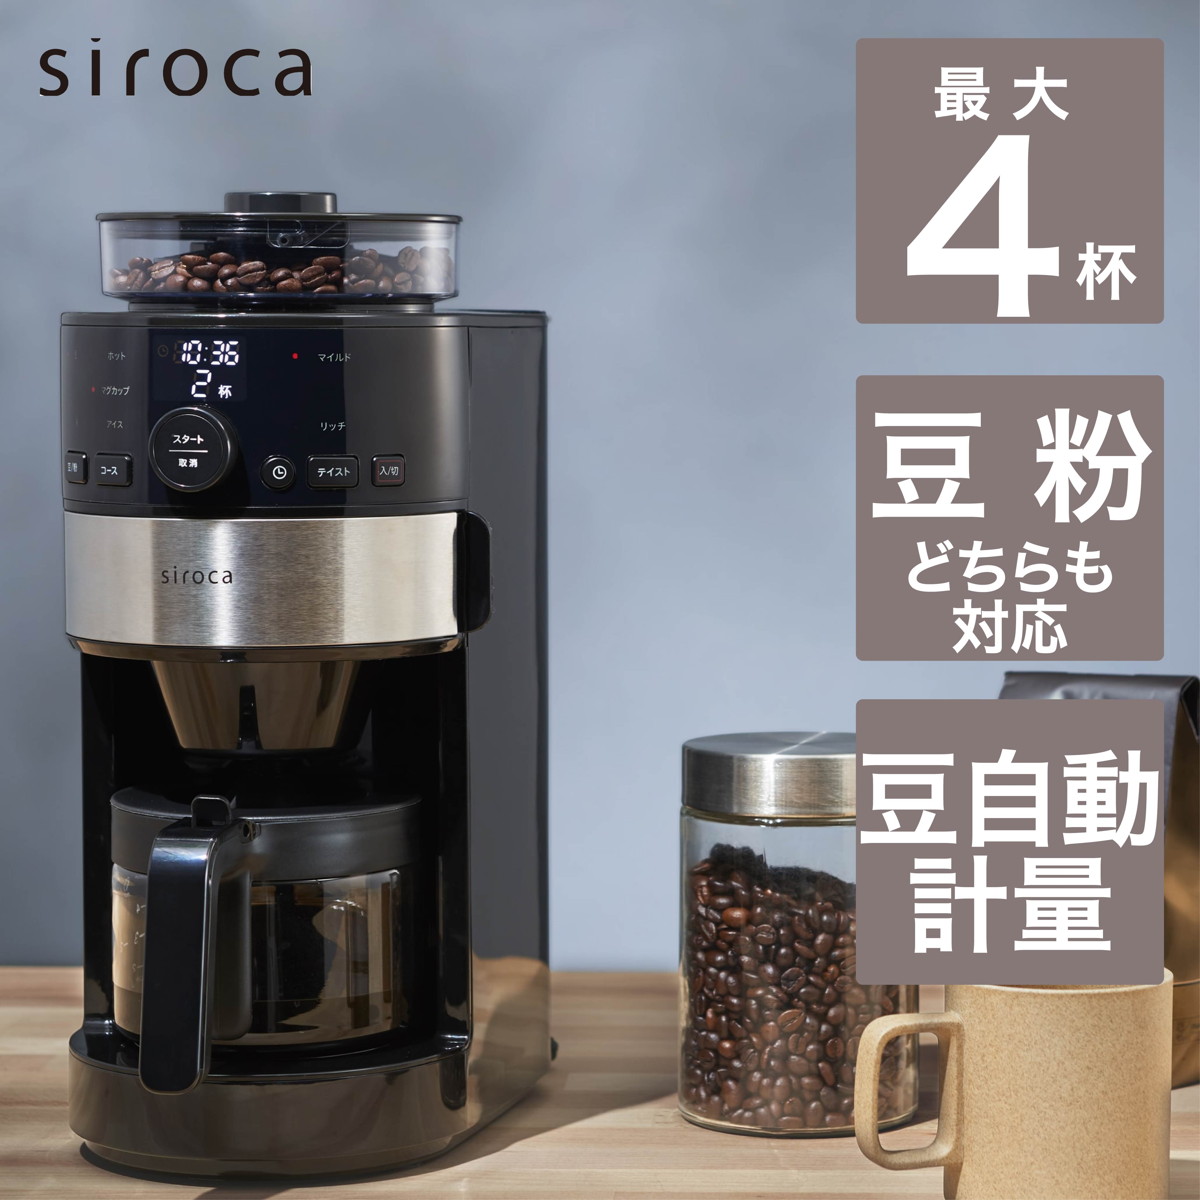 大人気! シロカ siroca コーン式全自動コーヒーメーカー SC-C111